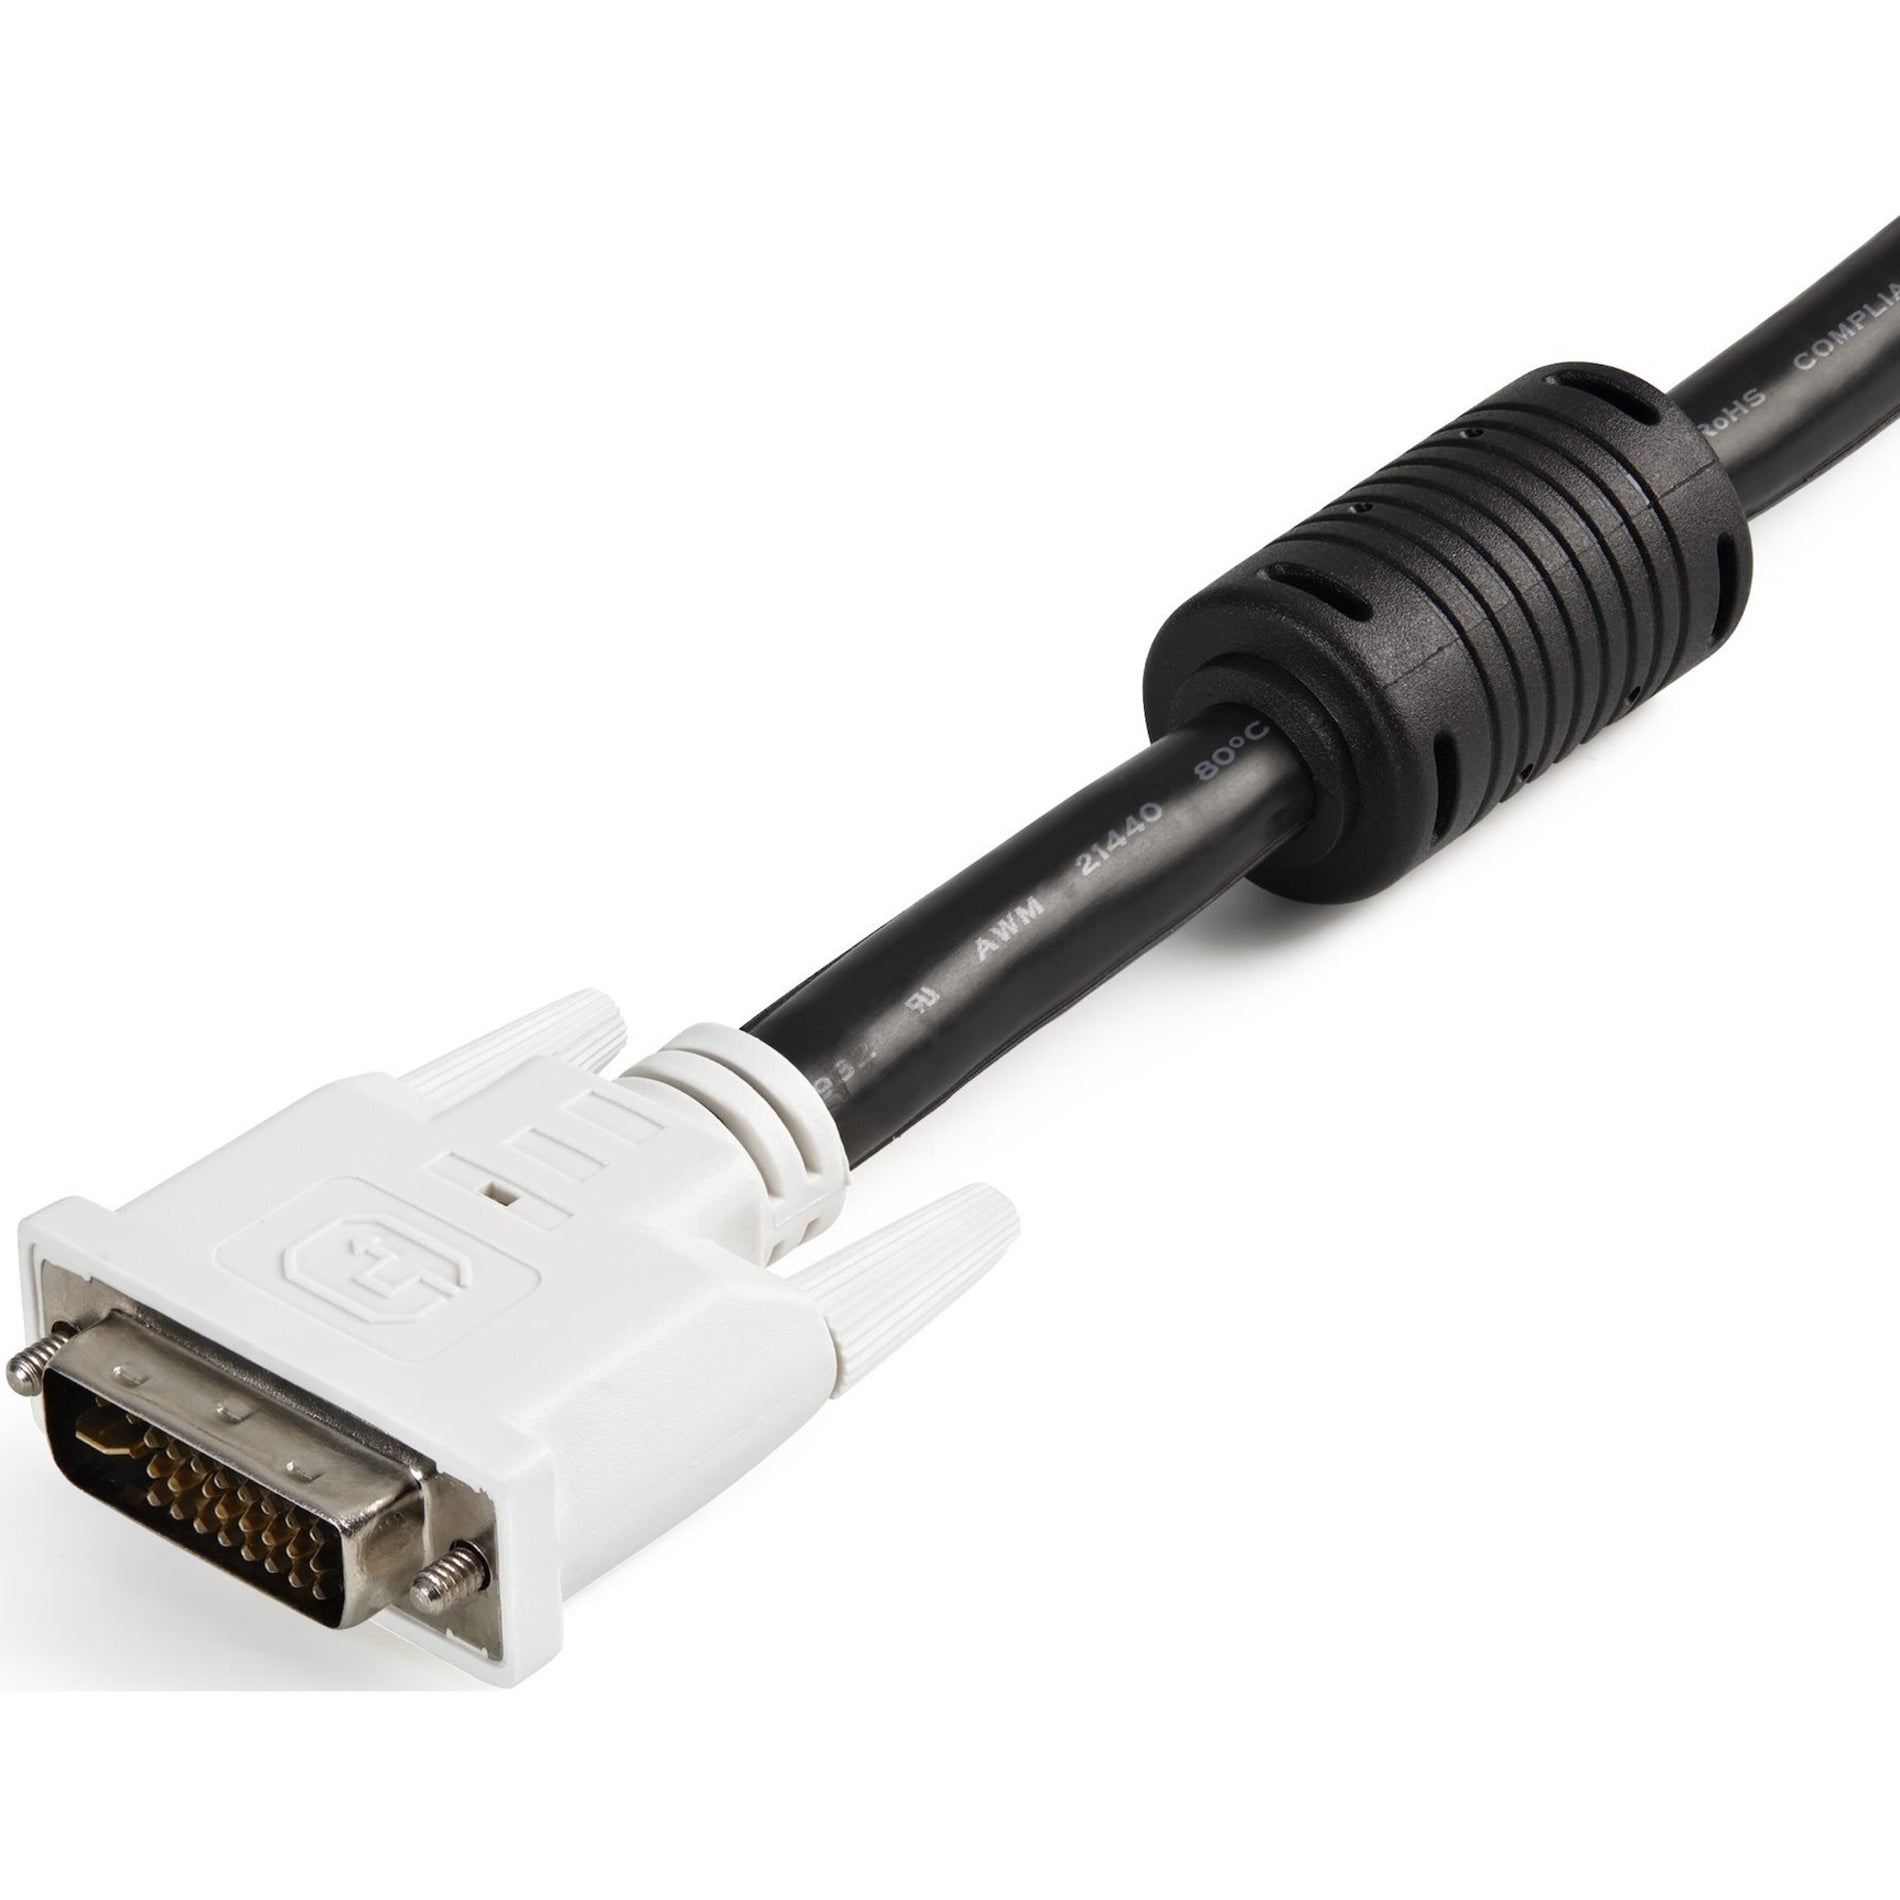 品牌：StarTech.com 产品名称：USBDVI4N1A10 10英尺4合1 USB DVI KVM 电缆与音频，铜导体，支持1920 x 1200分辨率，黑色